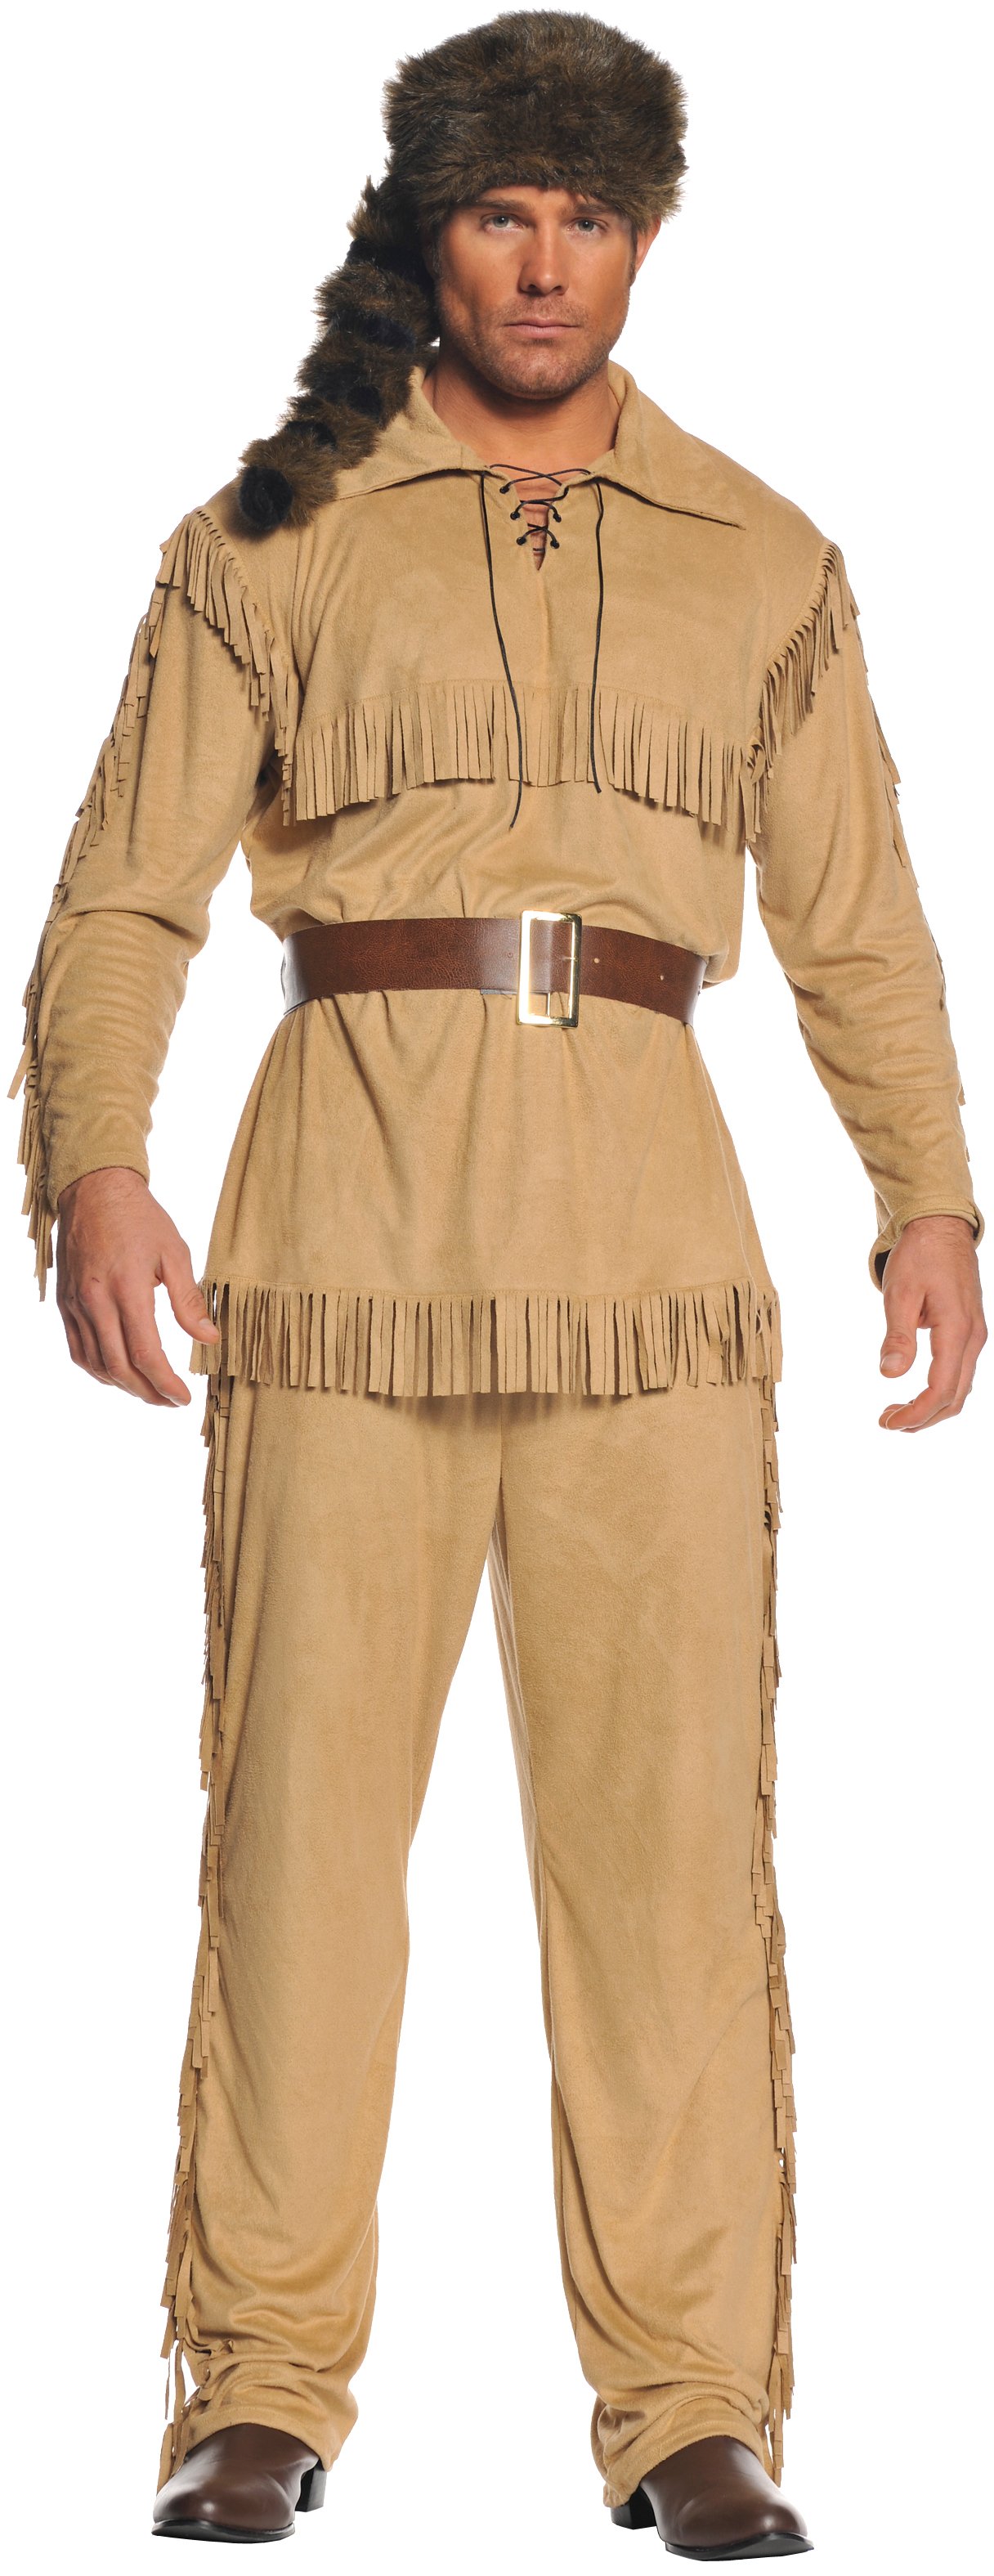 Frontier Man Adult Costume